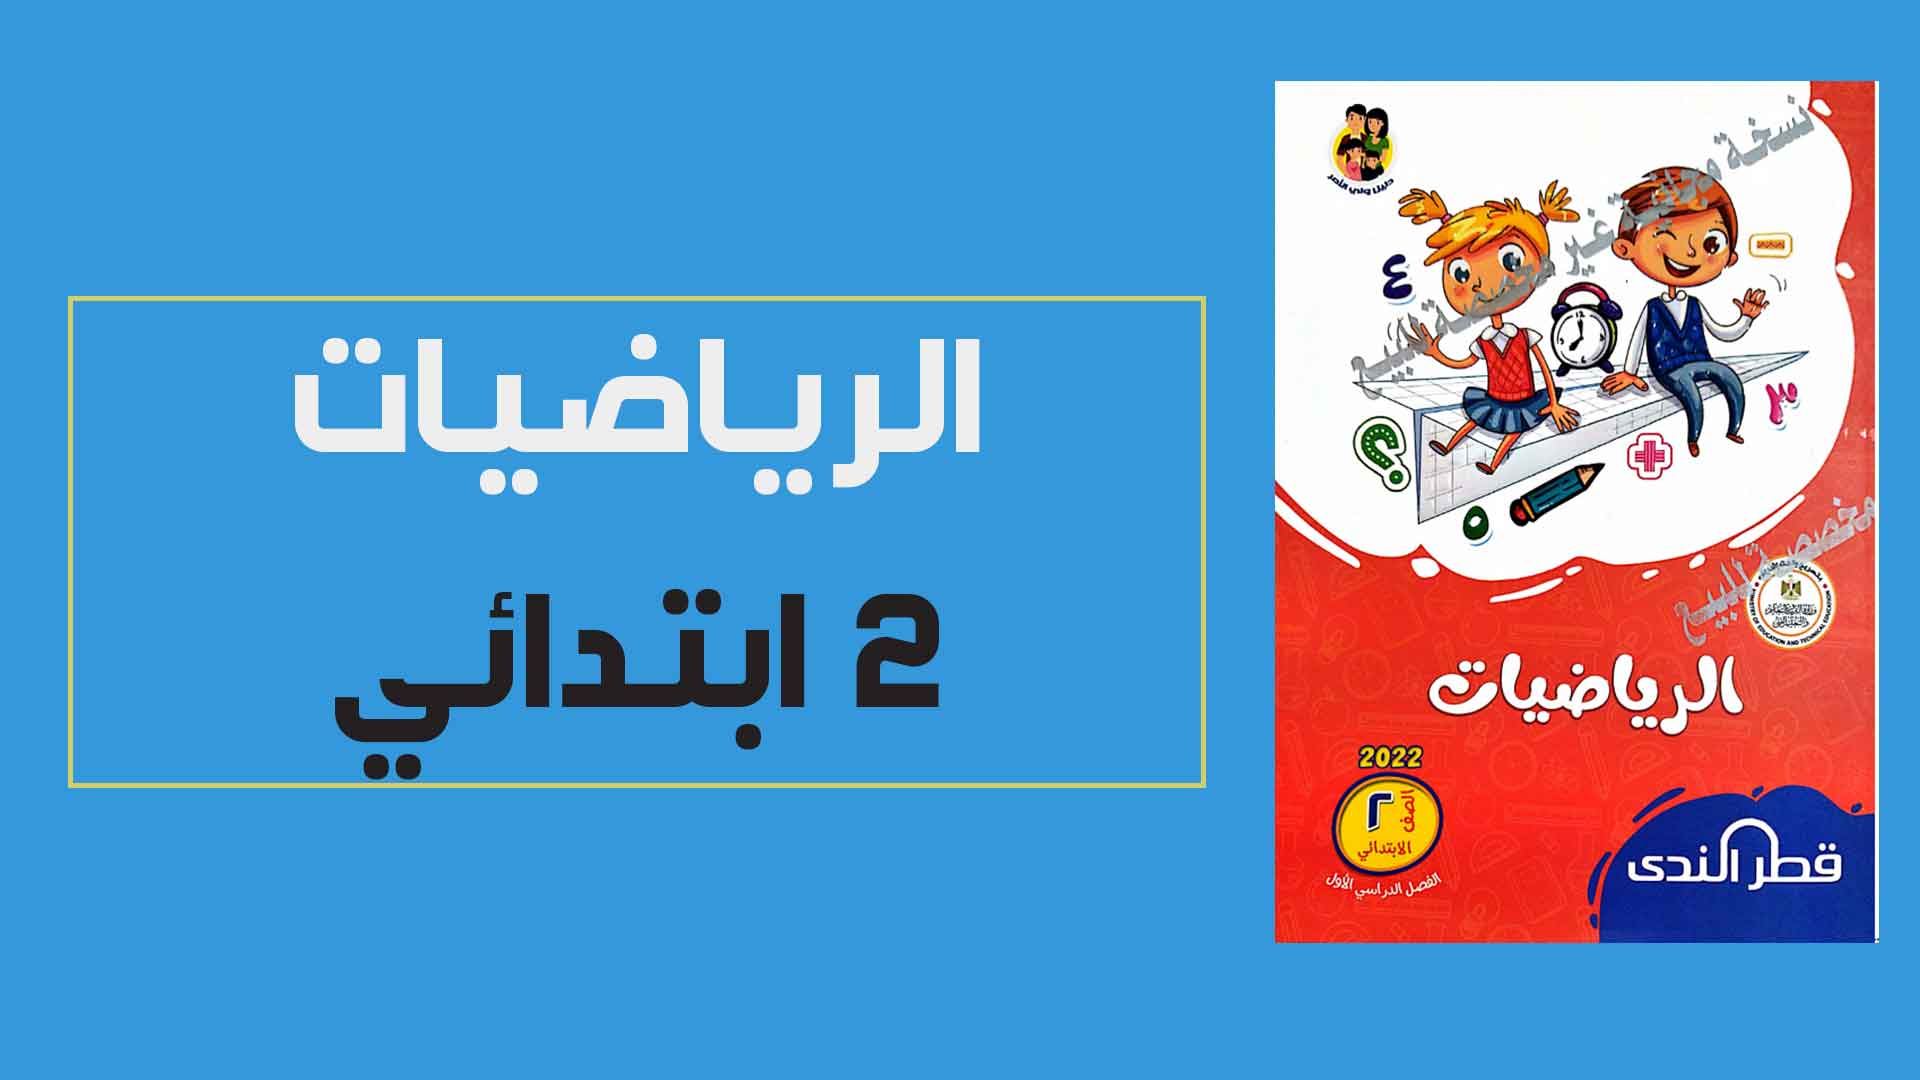 تحميل كتاب قطر الندى فى الرياضيات للصف الثانى الابتدائي الترم الاول 2022 (النسخة الجديدة)